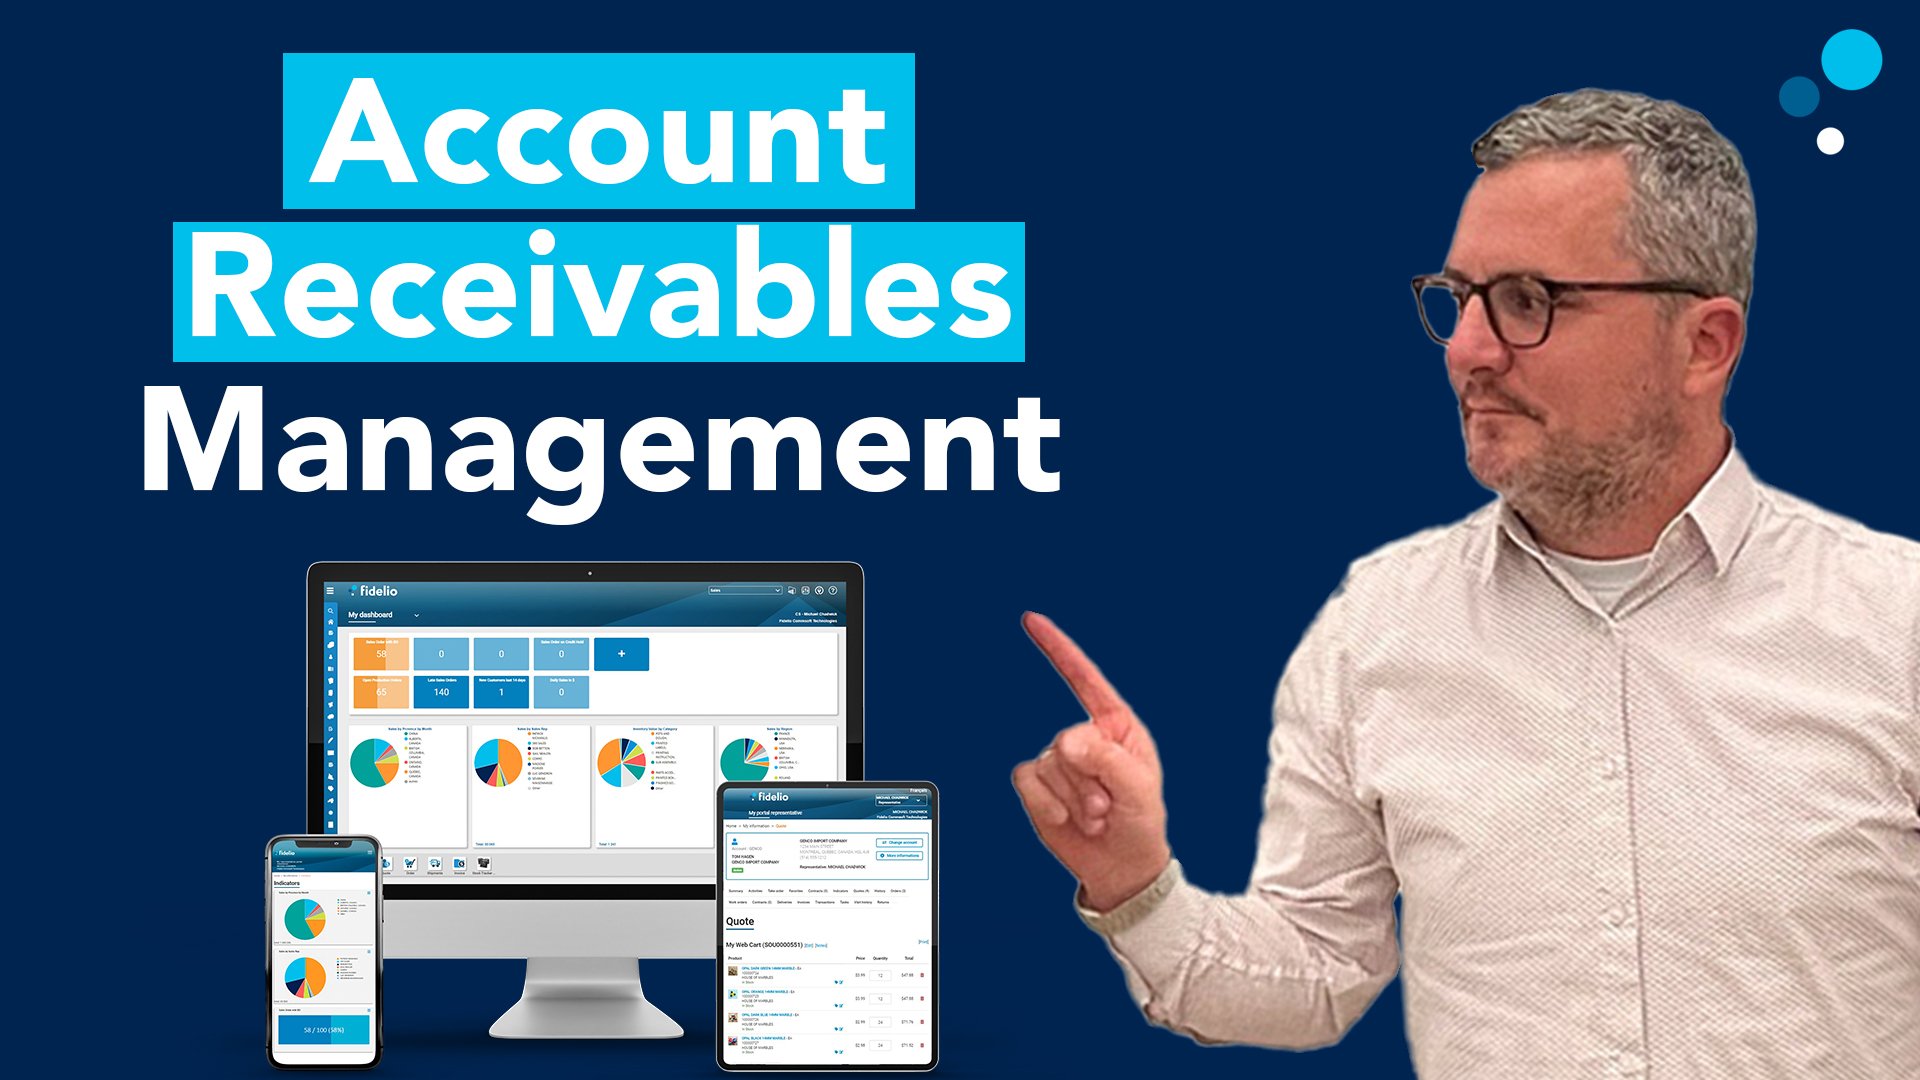 Accounts Receivables Management with Fidelio Cloud ERP